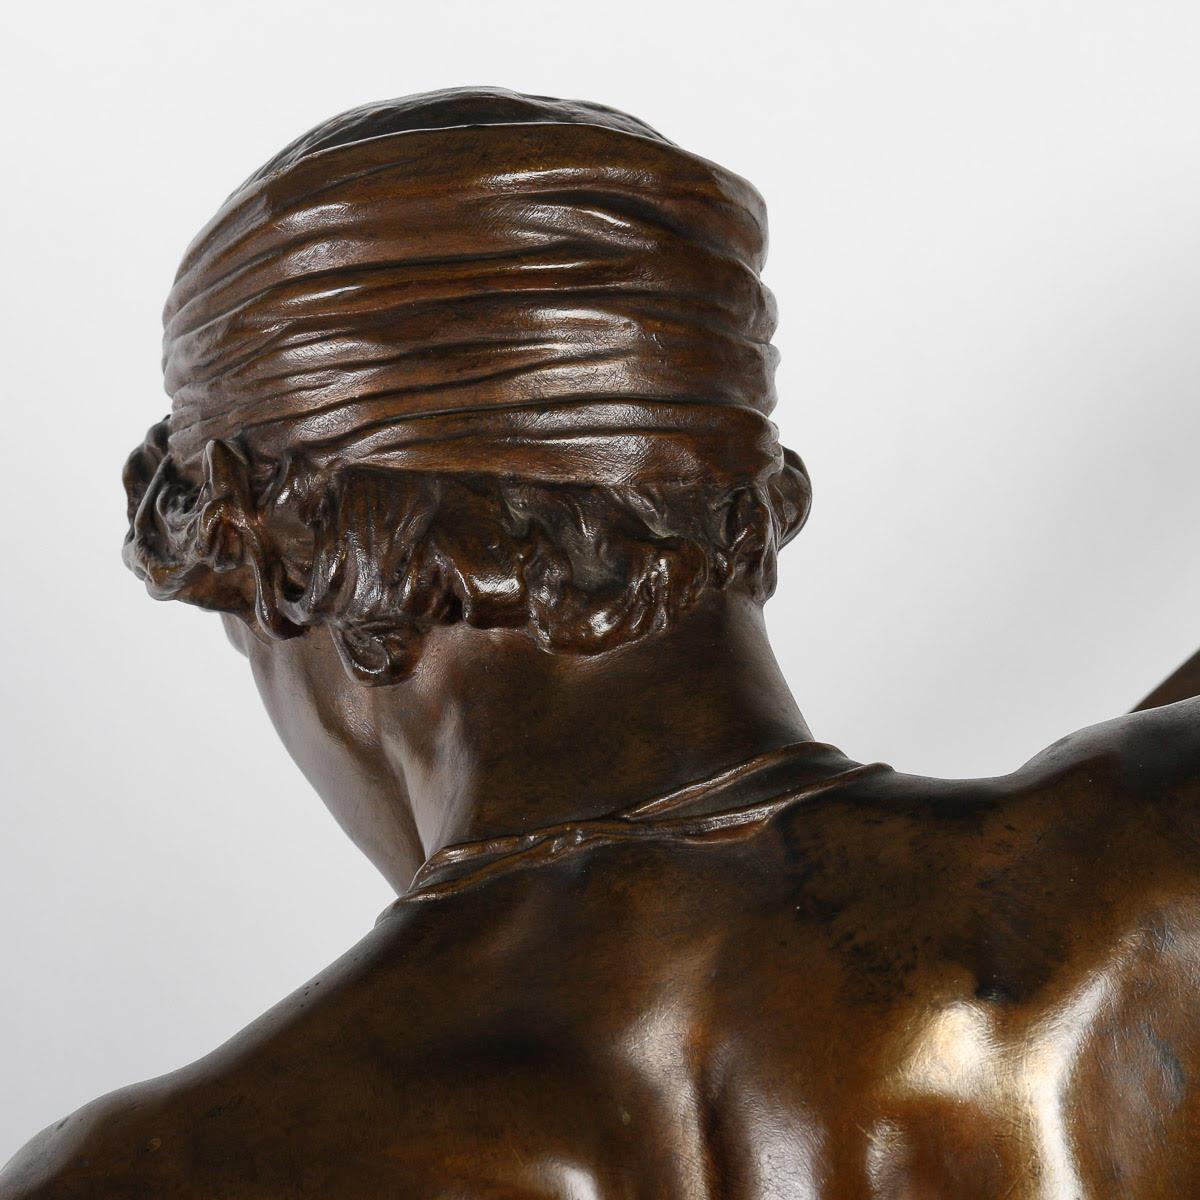 19th Century Bronze Sculpture by Antonin Mercier (1845-1916).